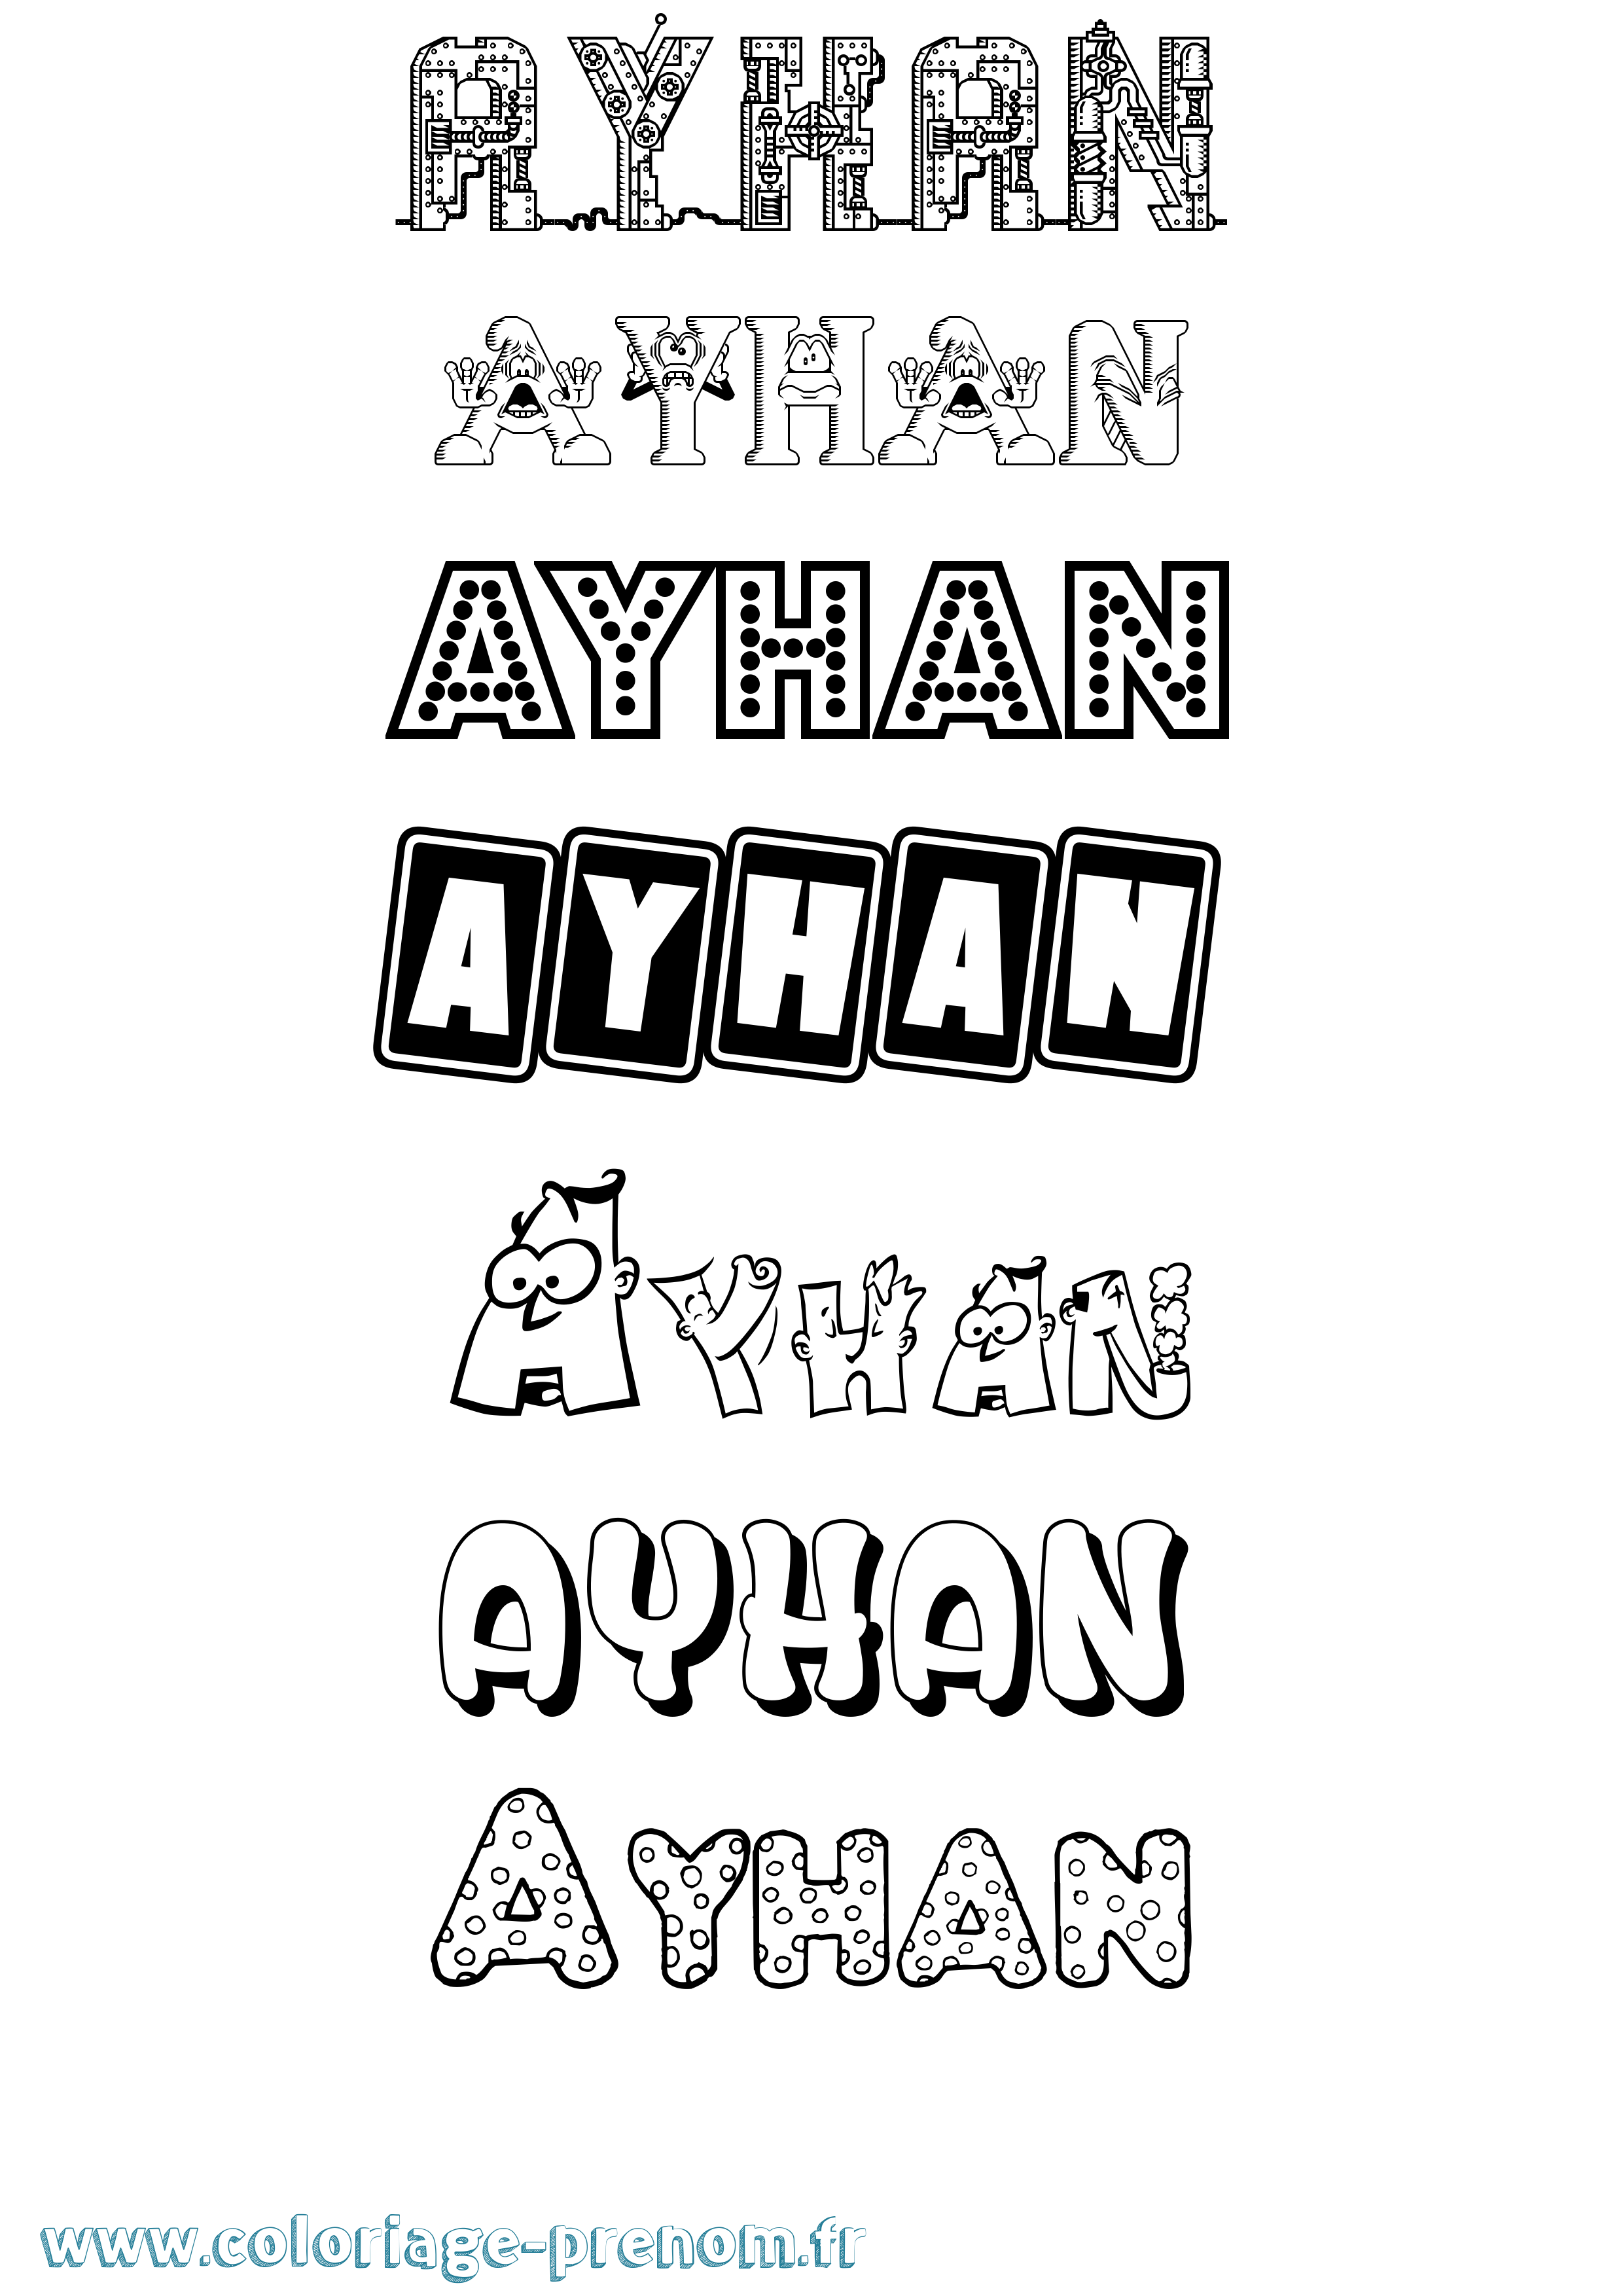 Coloriage prénom Ayhan Fun